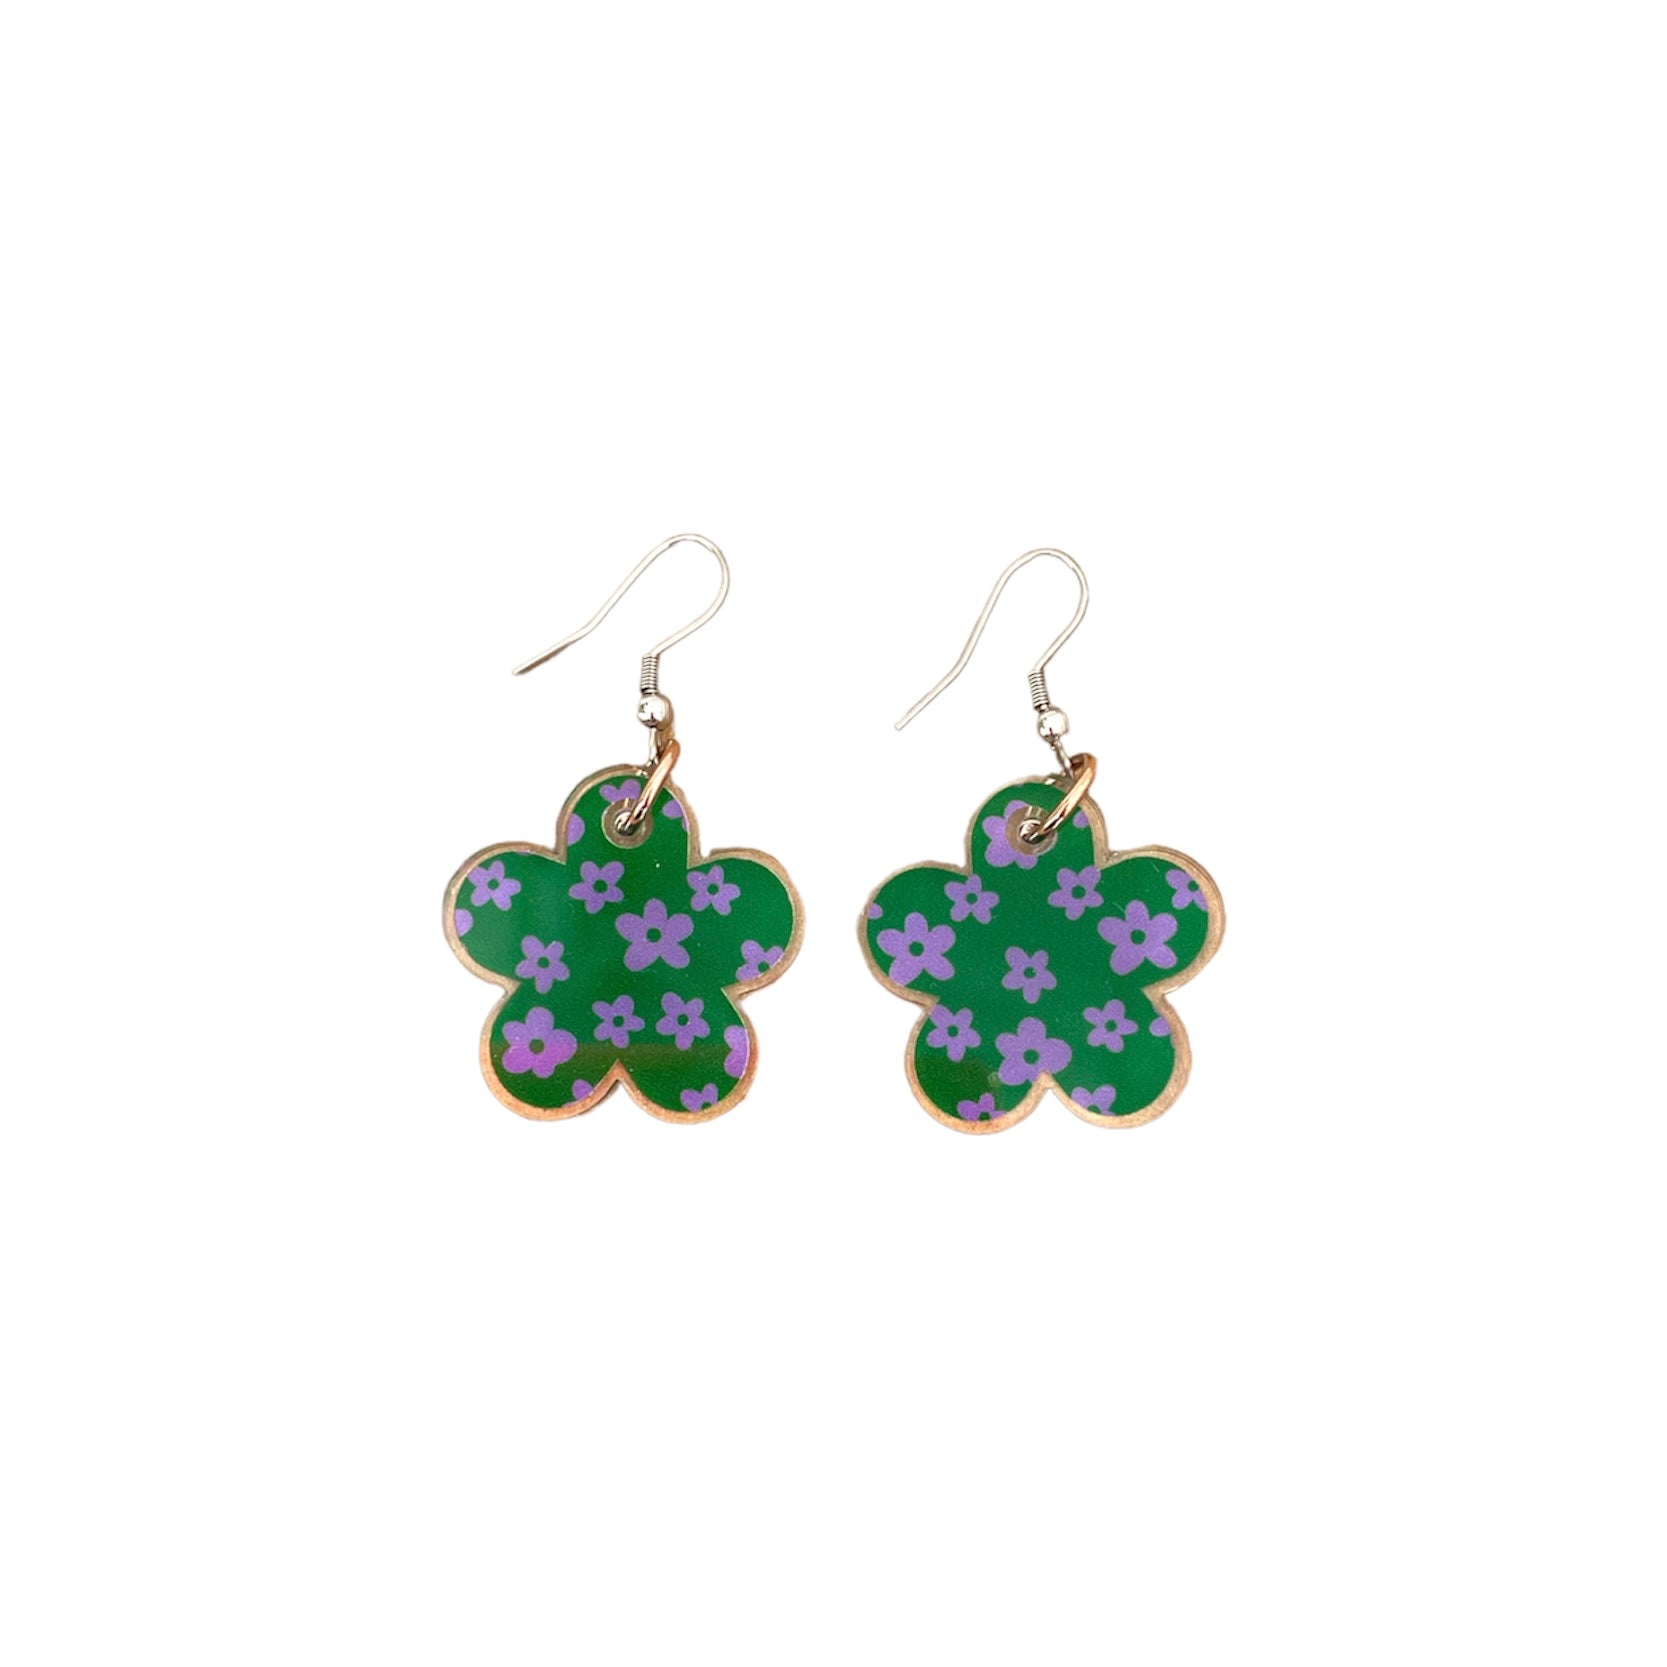 CLEARANCE - Flower Drop Earrings Green & Purple